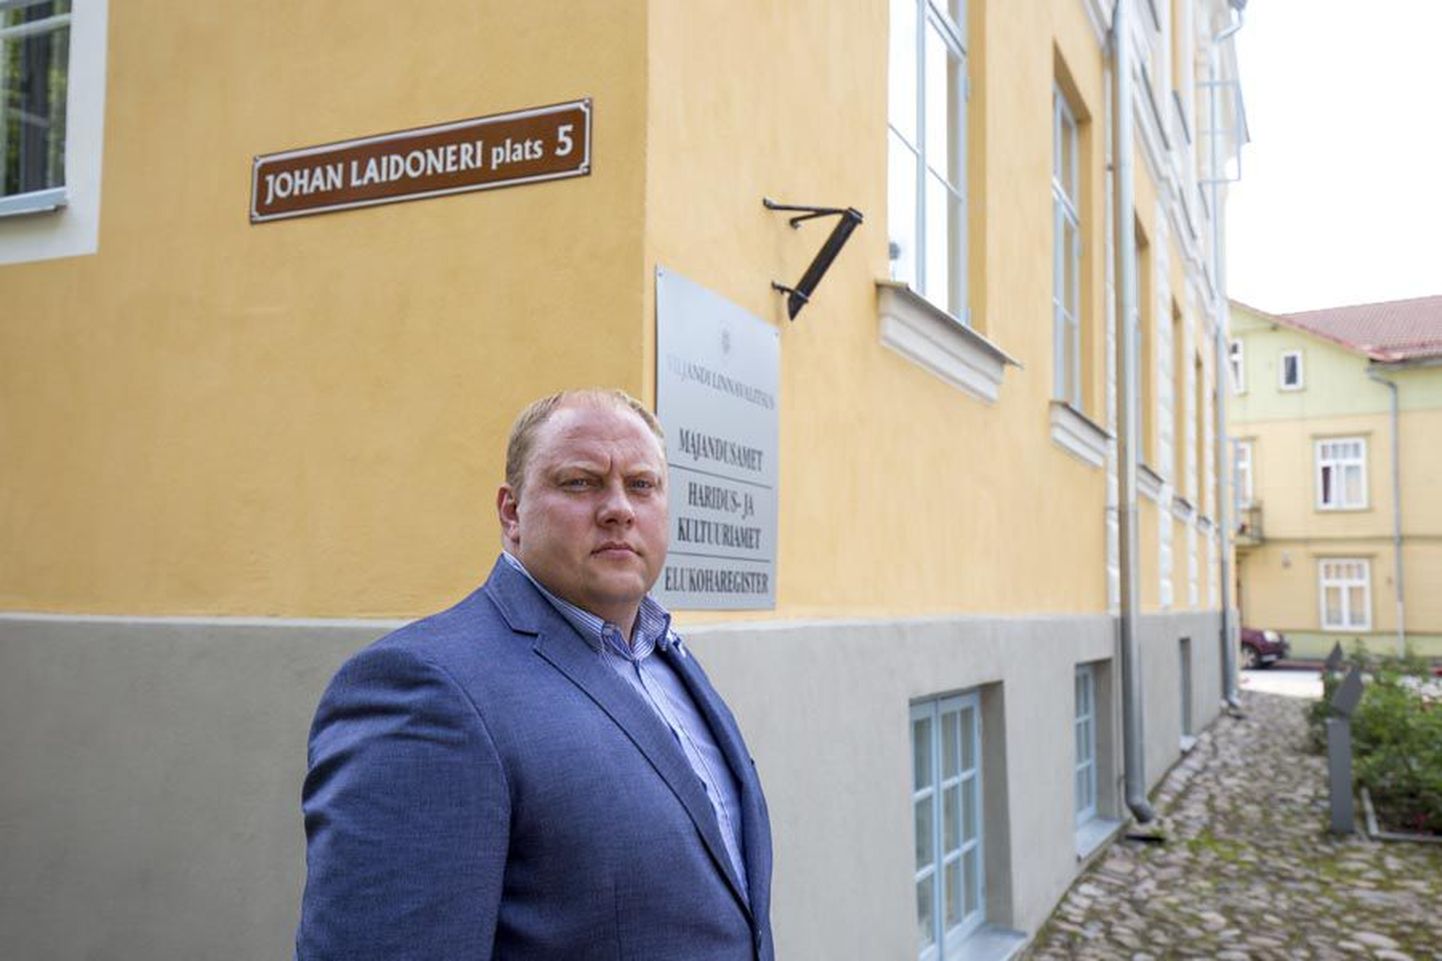 Varem Riigi Kinnisvara aktsiaseltsi Lõuna piirkonna haldurina töötanud Andres Mägi on kaks nädalat Viljandi linna uut kinnisvara haldamisega tegelevat allüksust juhtinud.